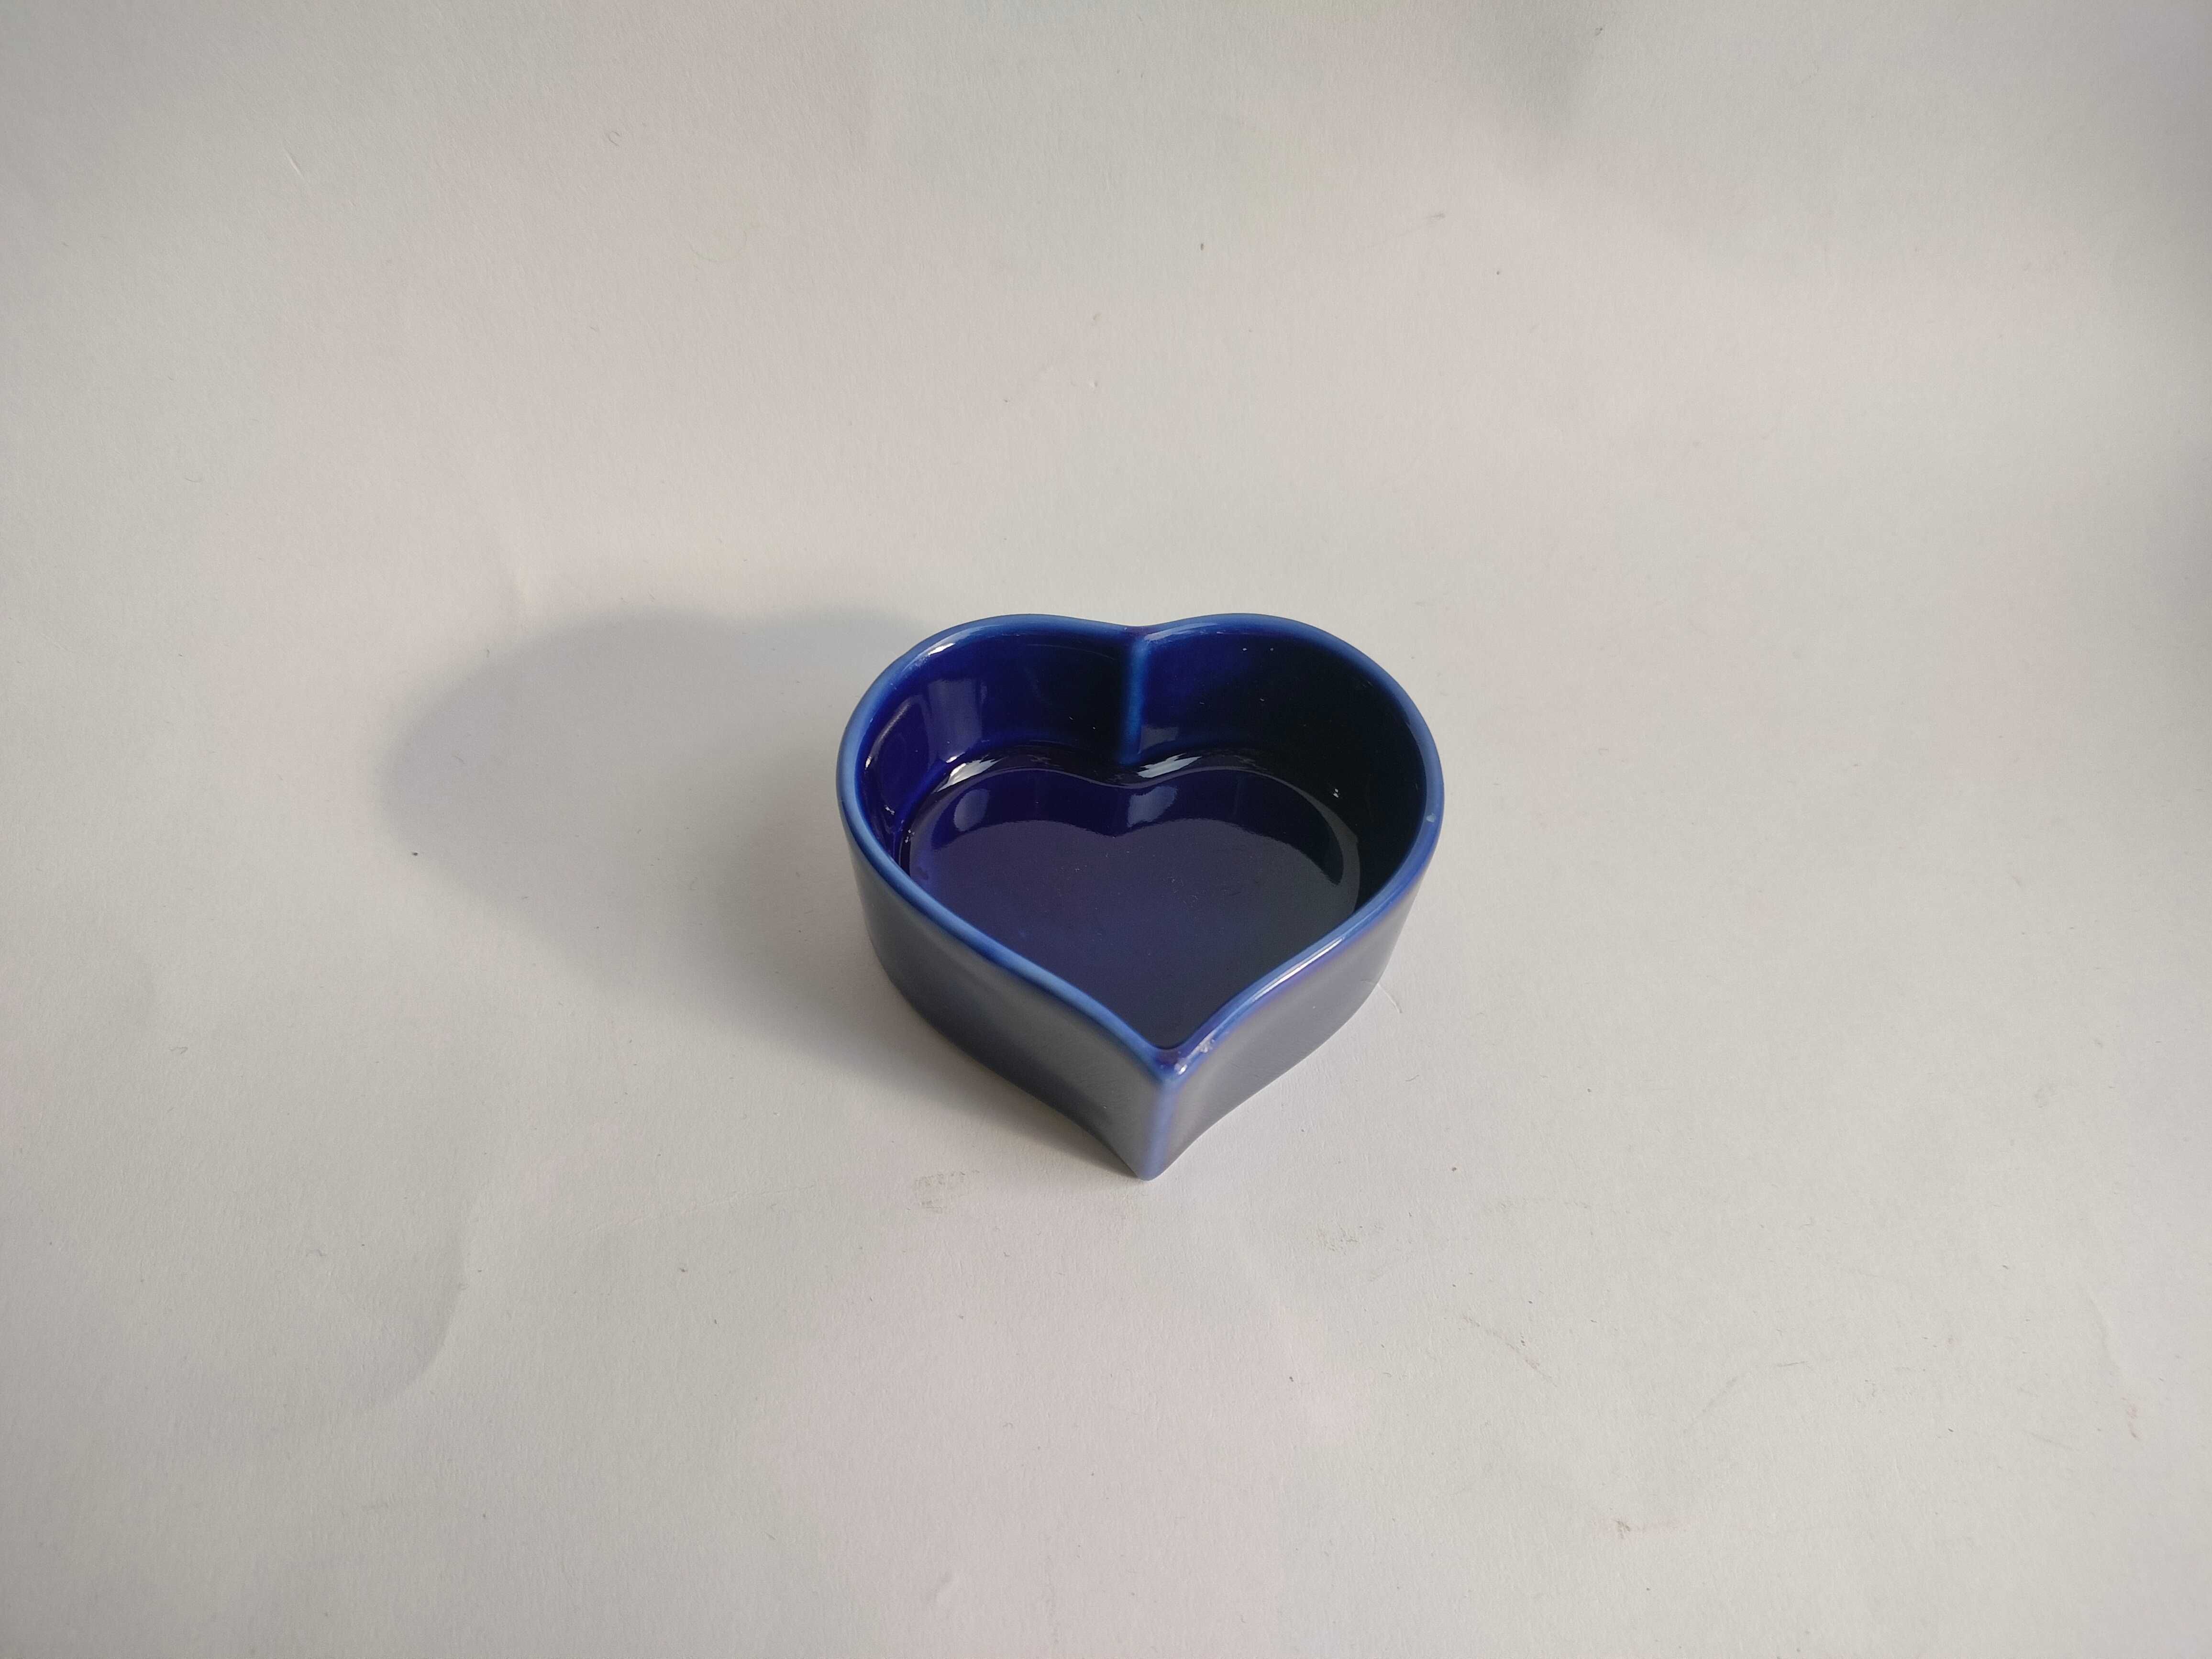 Maleńka granatowa ceramiczna miseczka w kształcie serca, pojemniczek